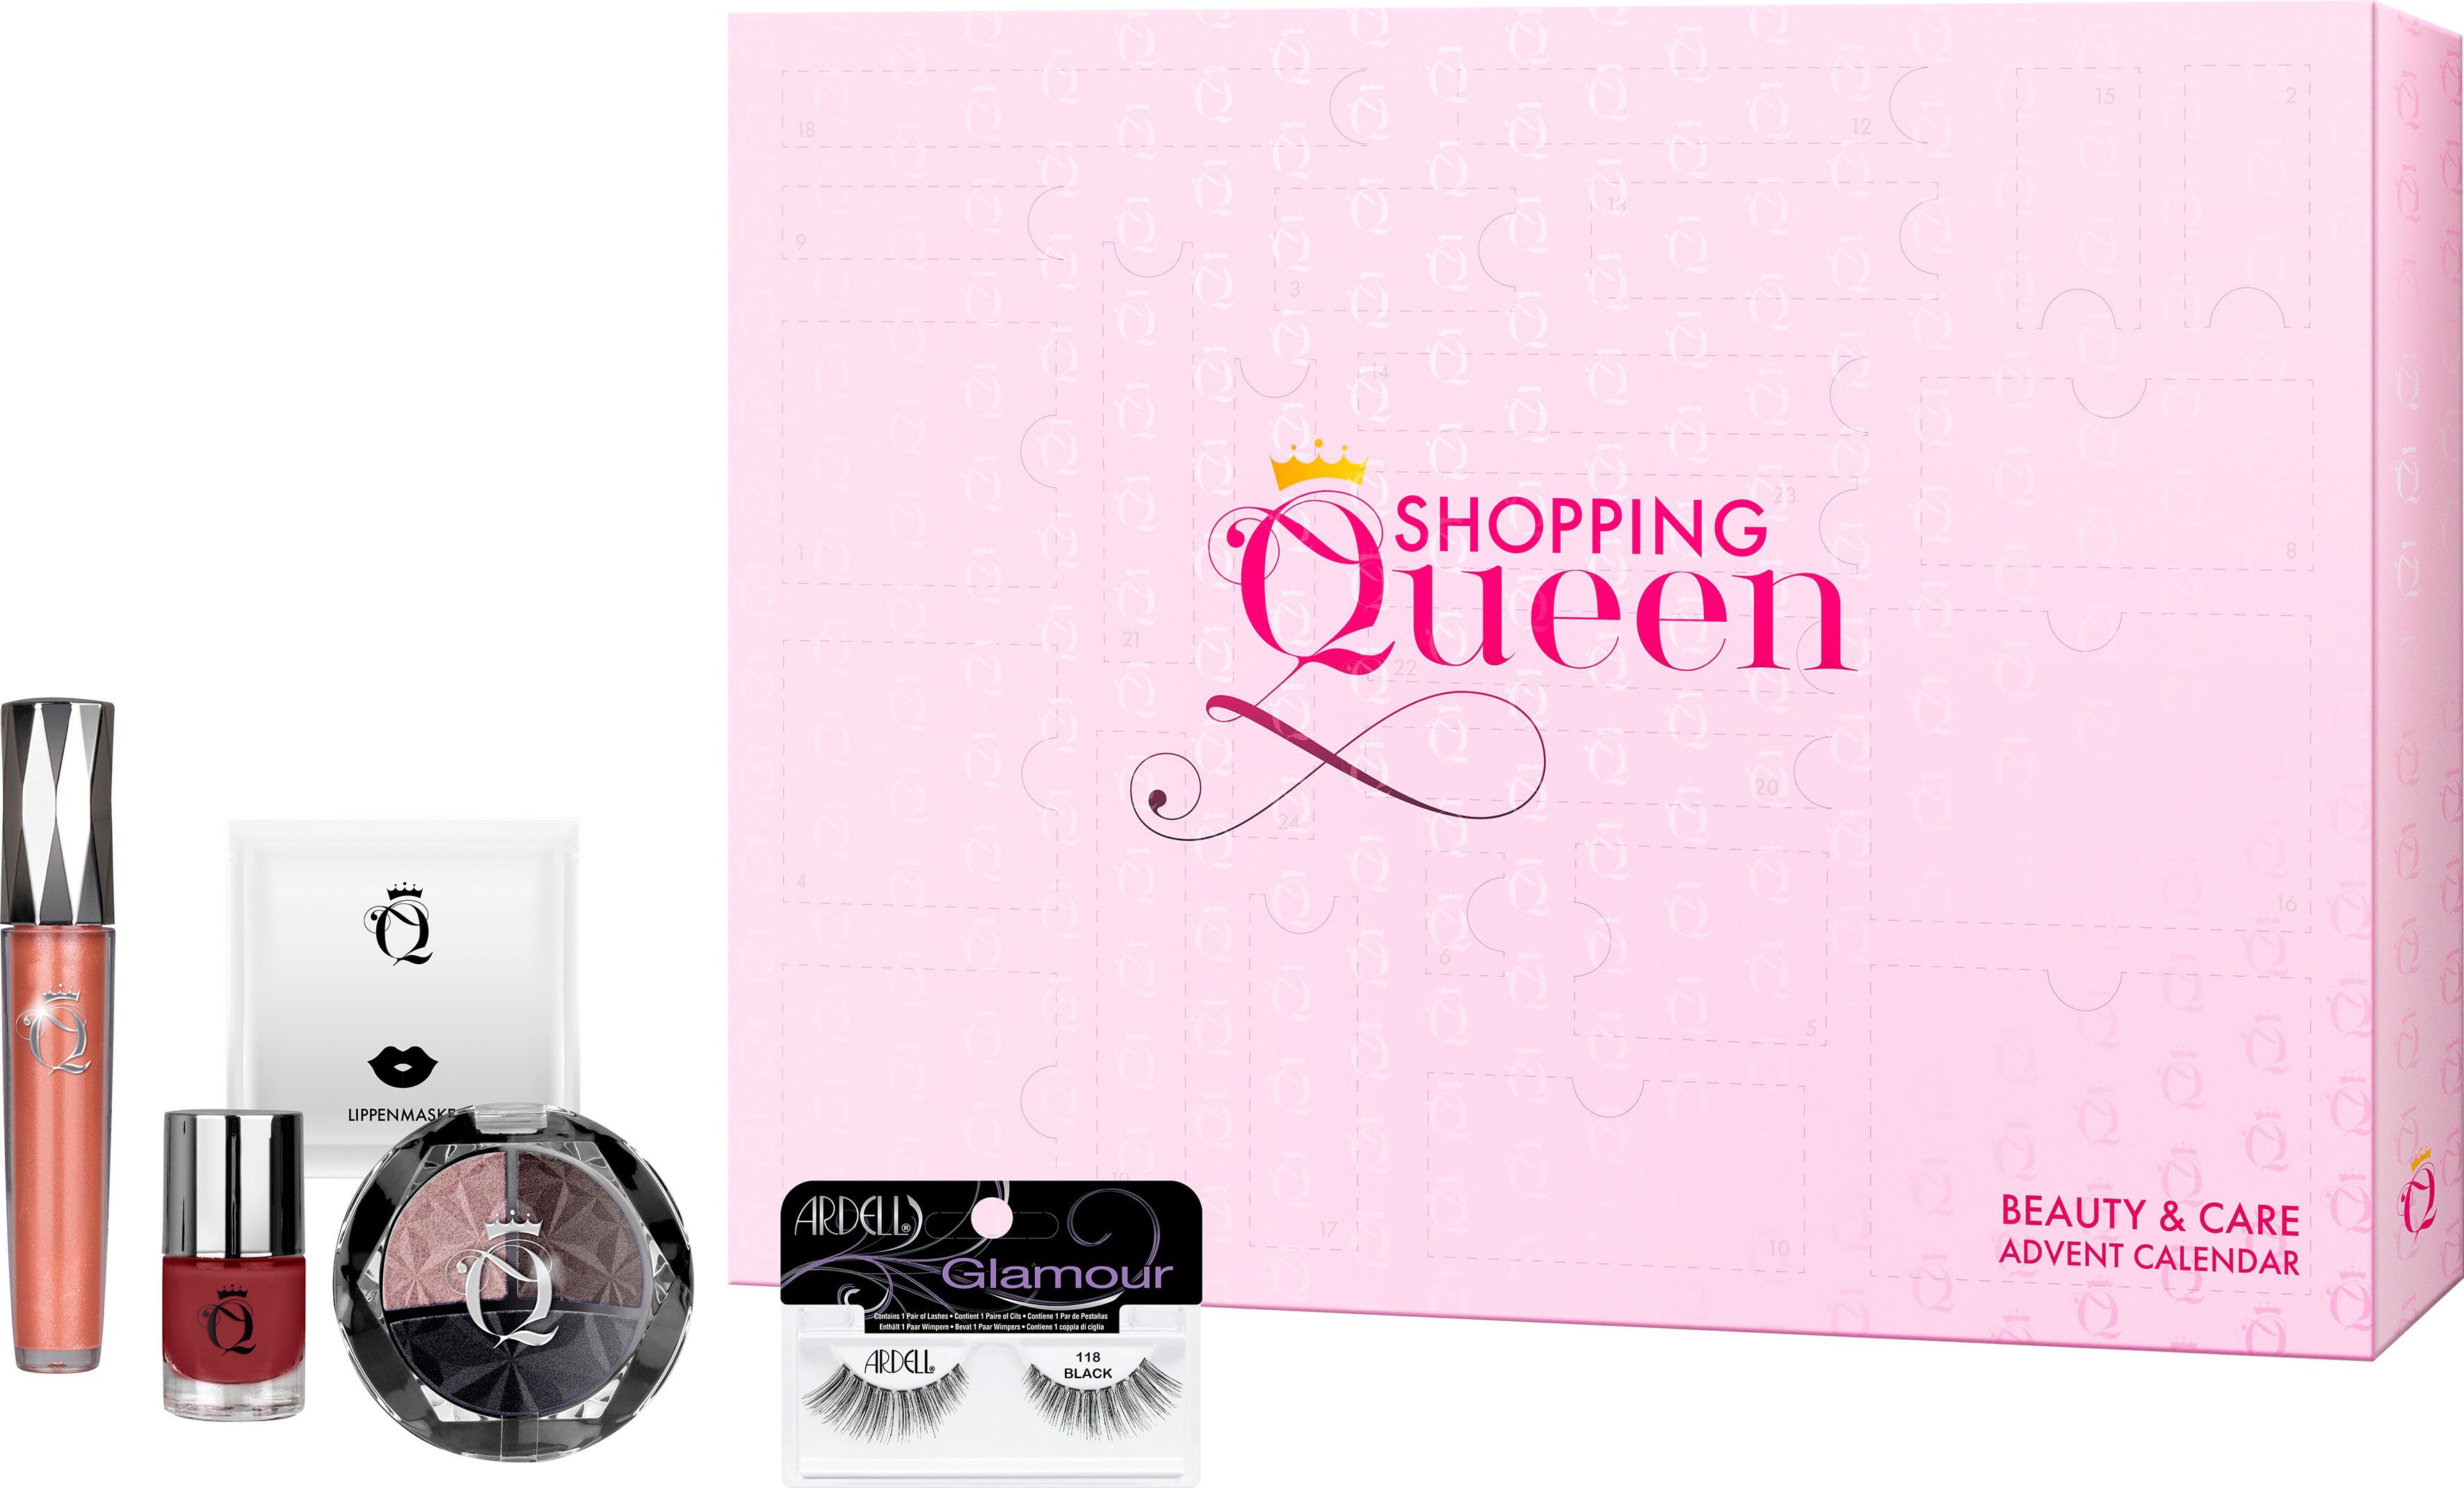 Shopping Queen Adventskalender Shopping Queen meets ARDELL